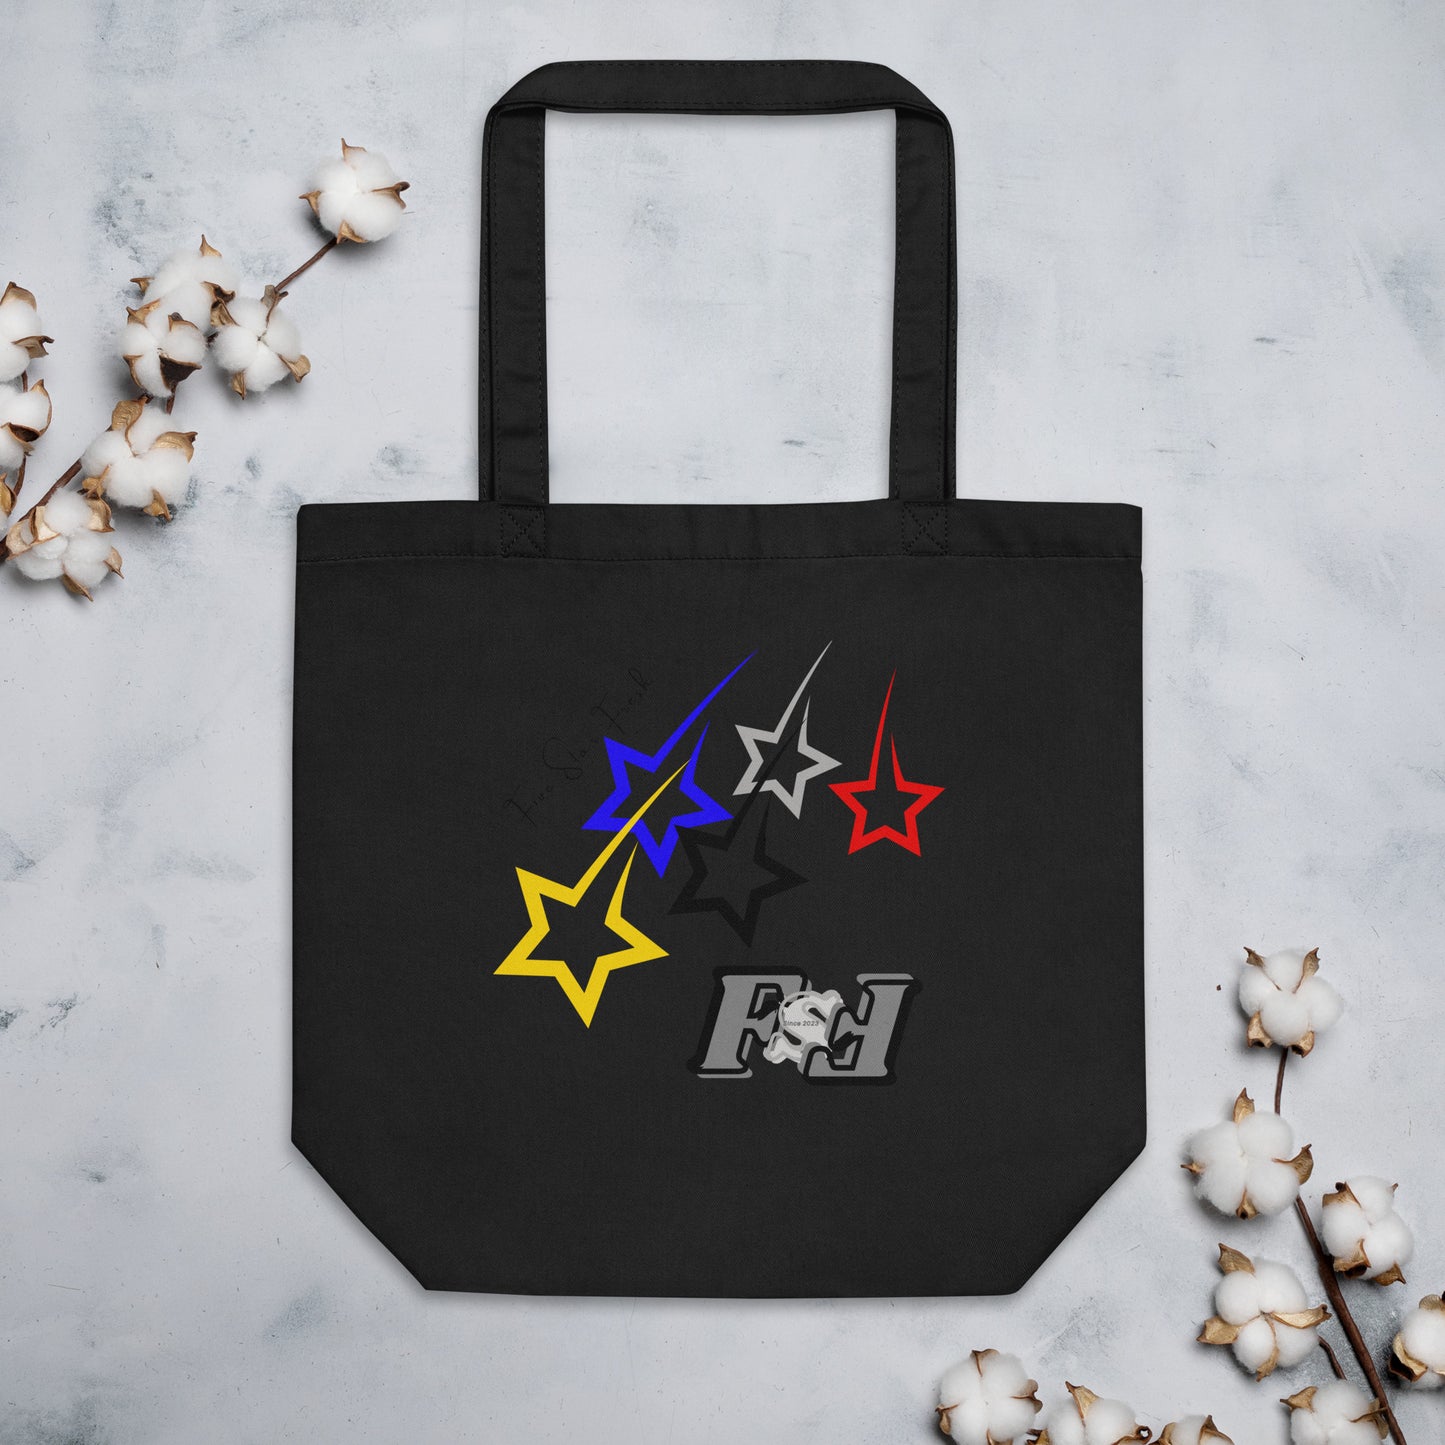 'Shooting Star' Bright - Five Star Fresh Eco Tote Bag